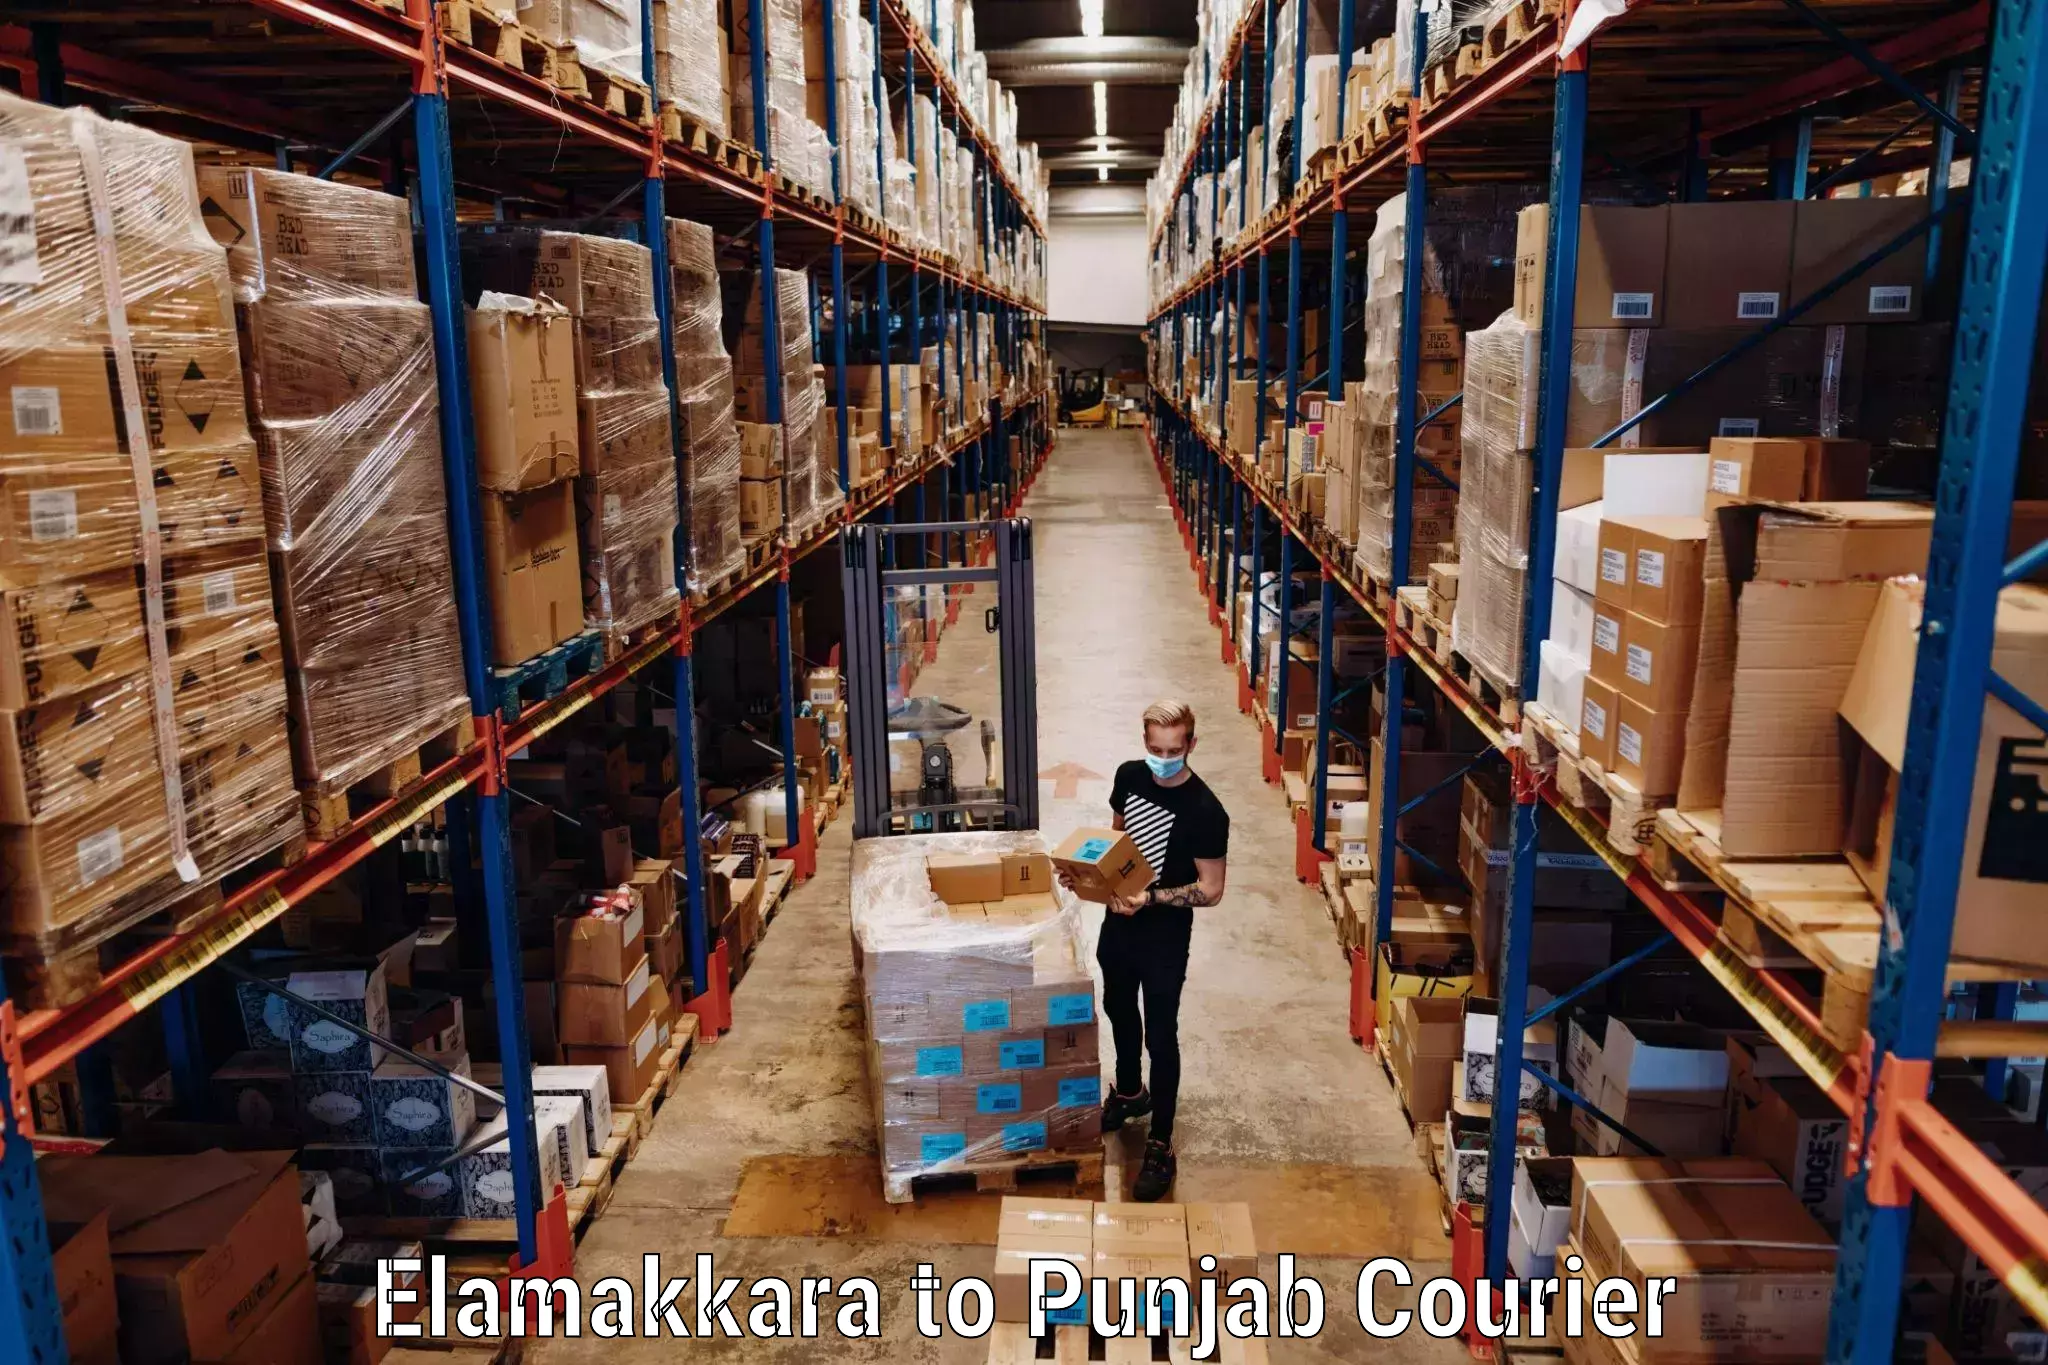 Luggage shipment tracking Elamakkara to Punjab